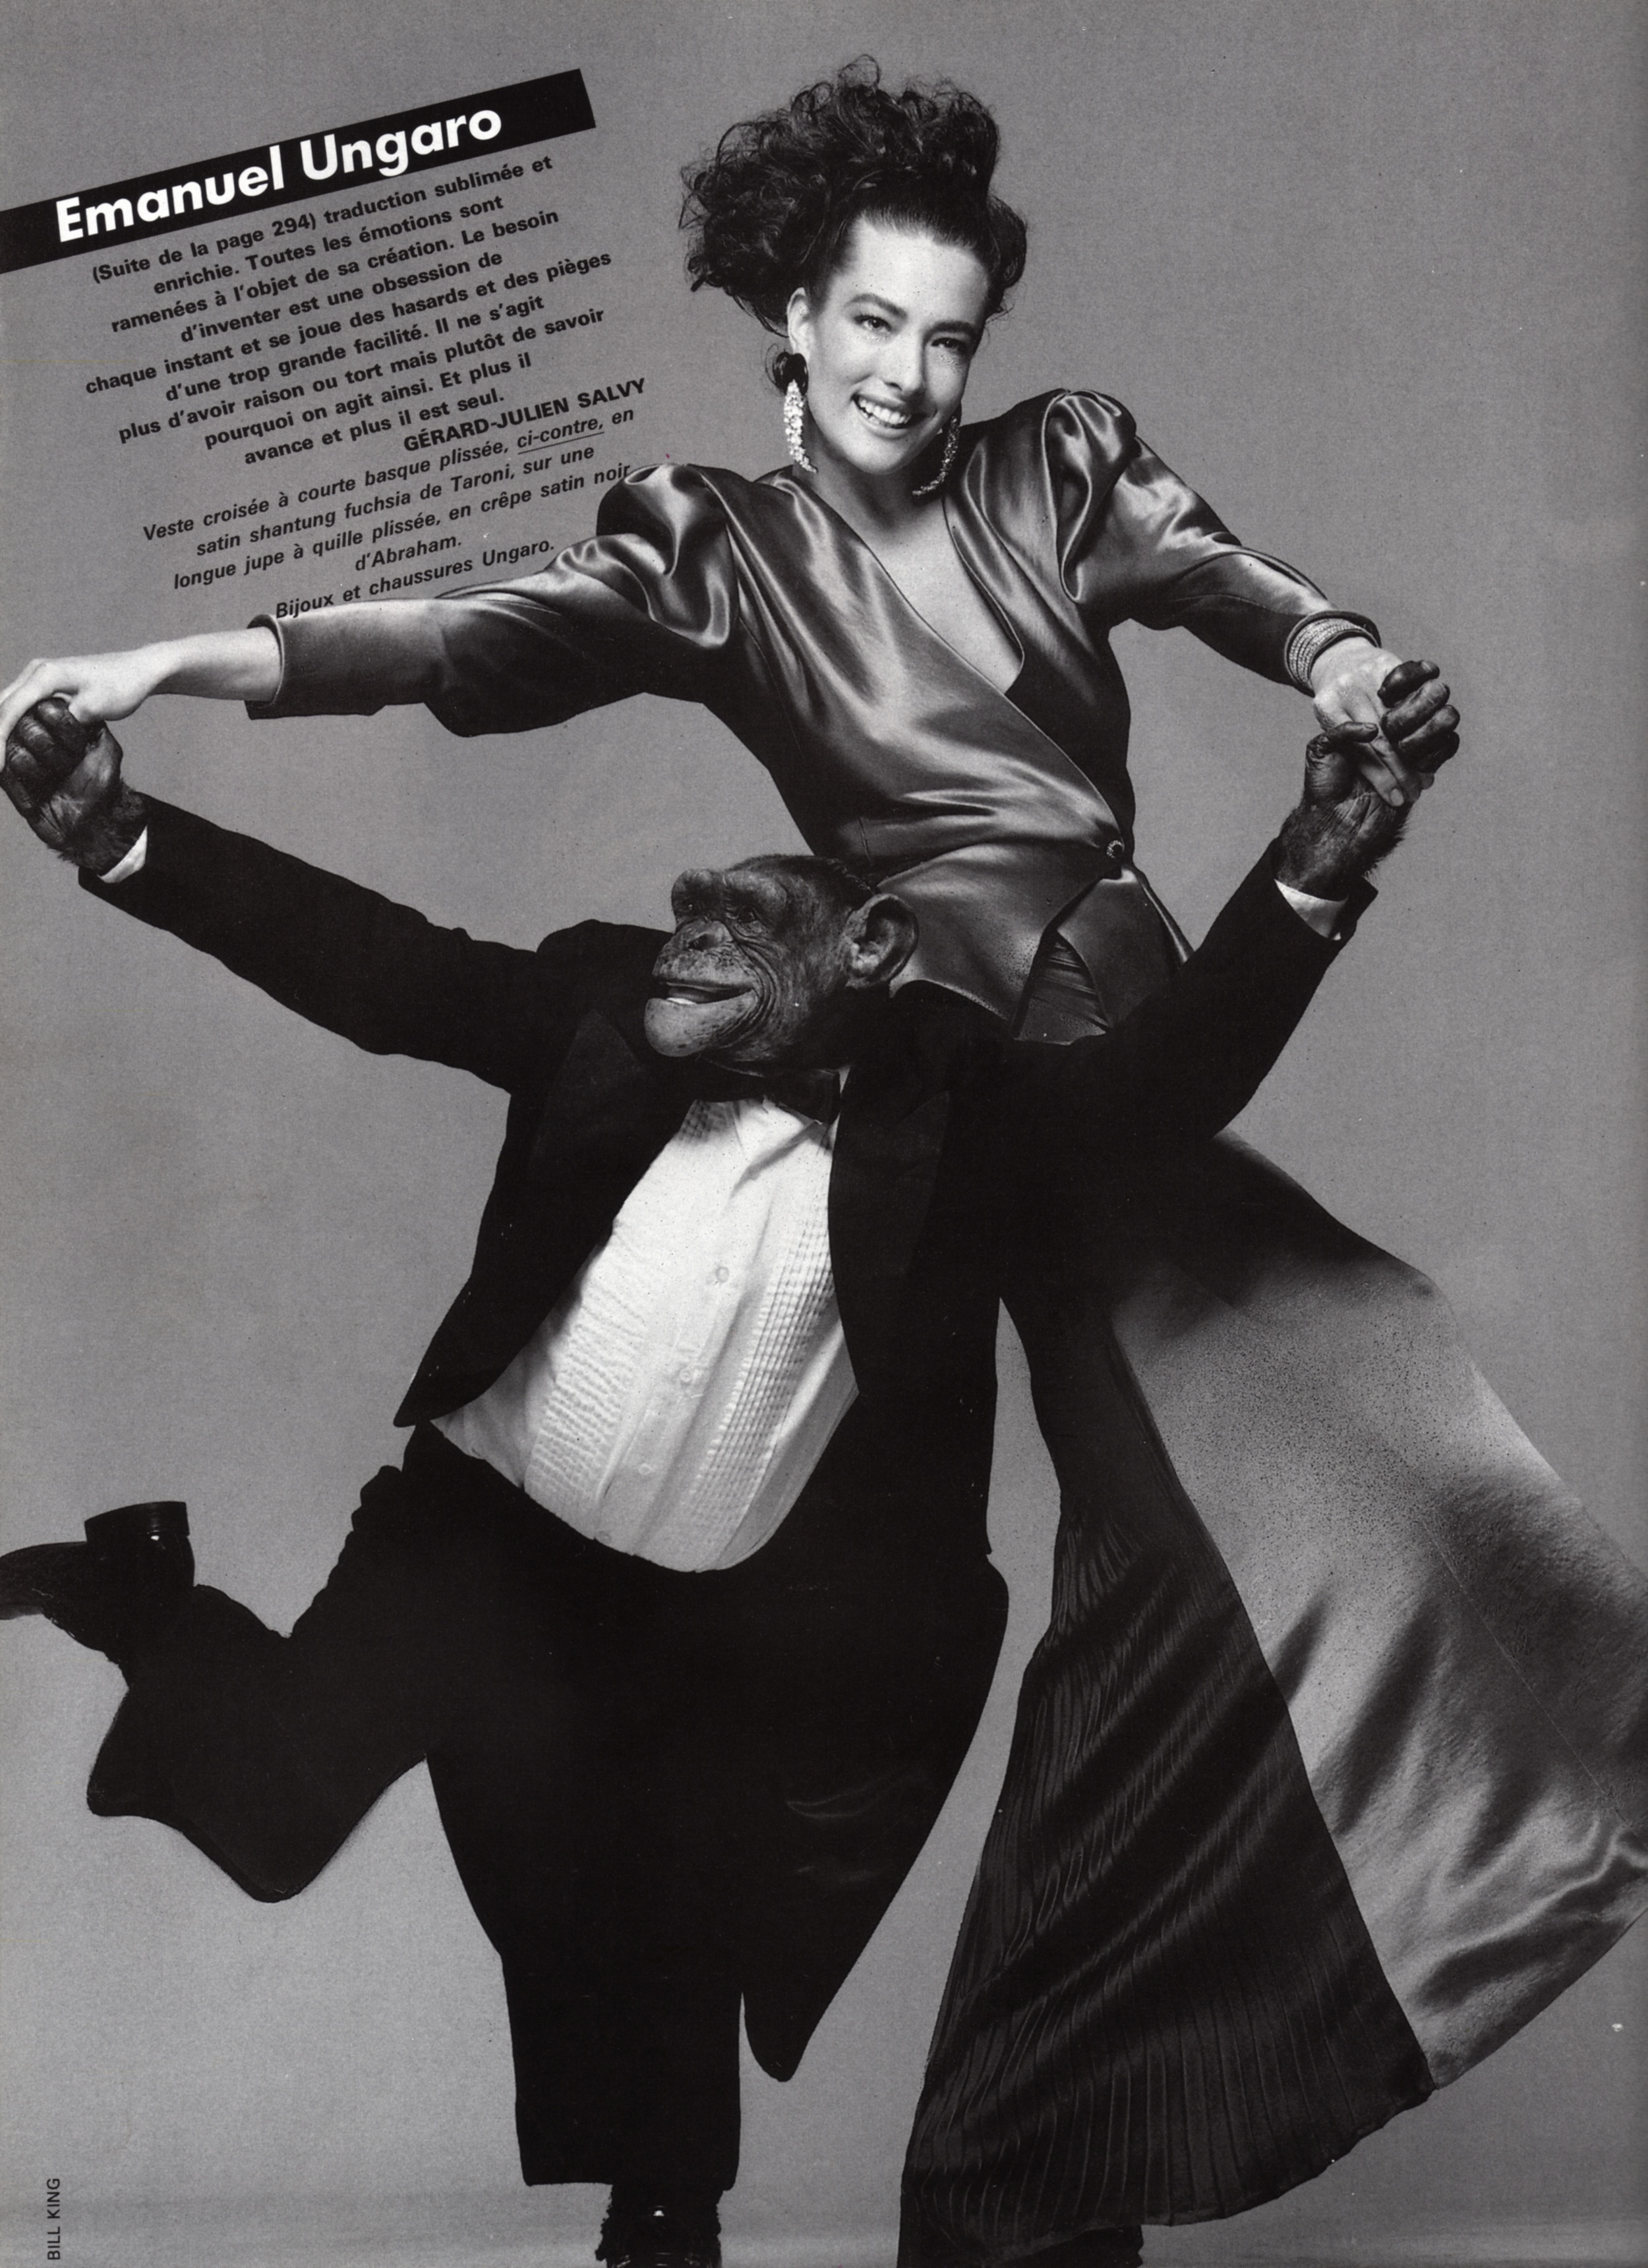 King Vogue Paris March 1986 05